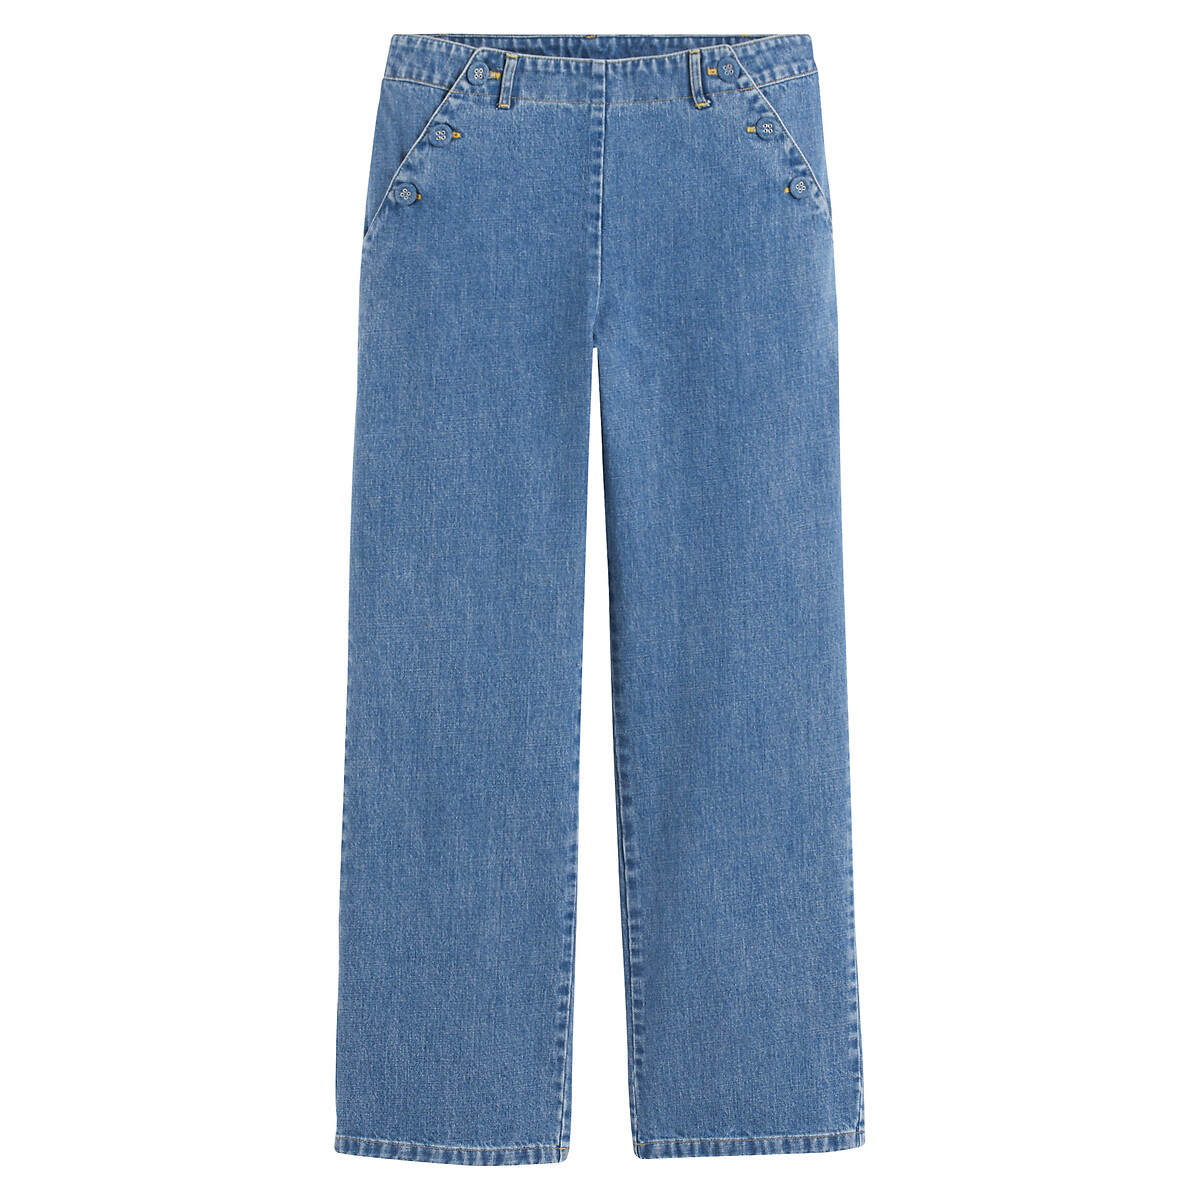 Джинсы прямые с завышенной талией 38 (FR) - 44 (RUS) синий джинсы широкие с ремешком 38 fr 44 rus серый